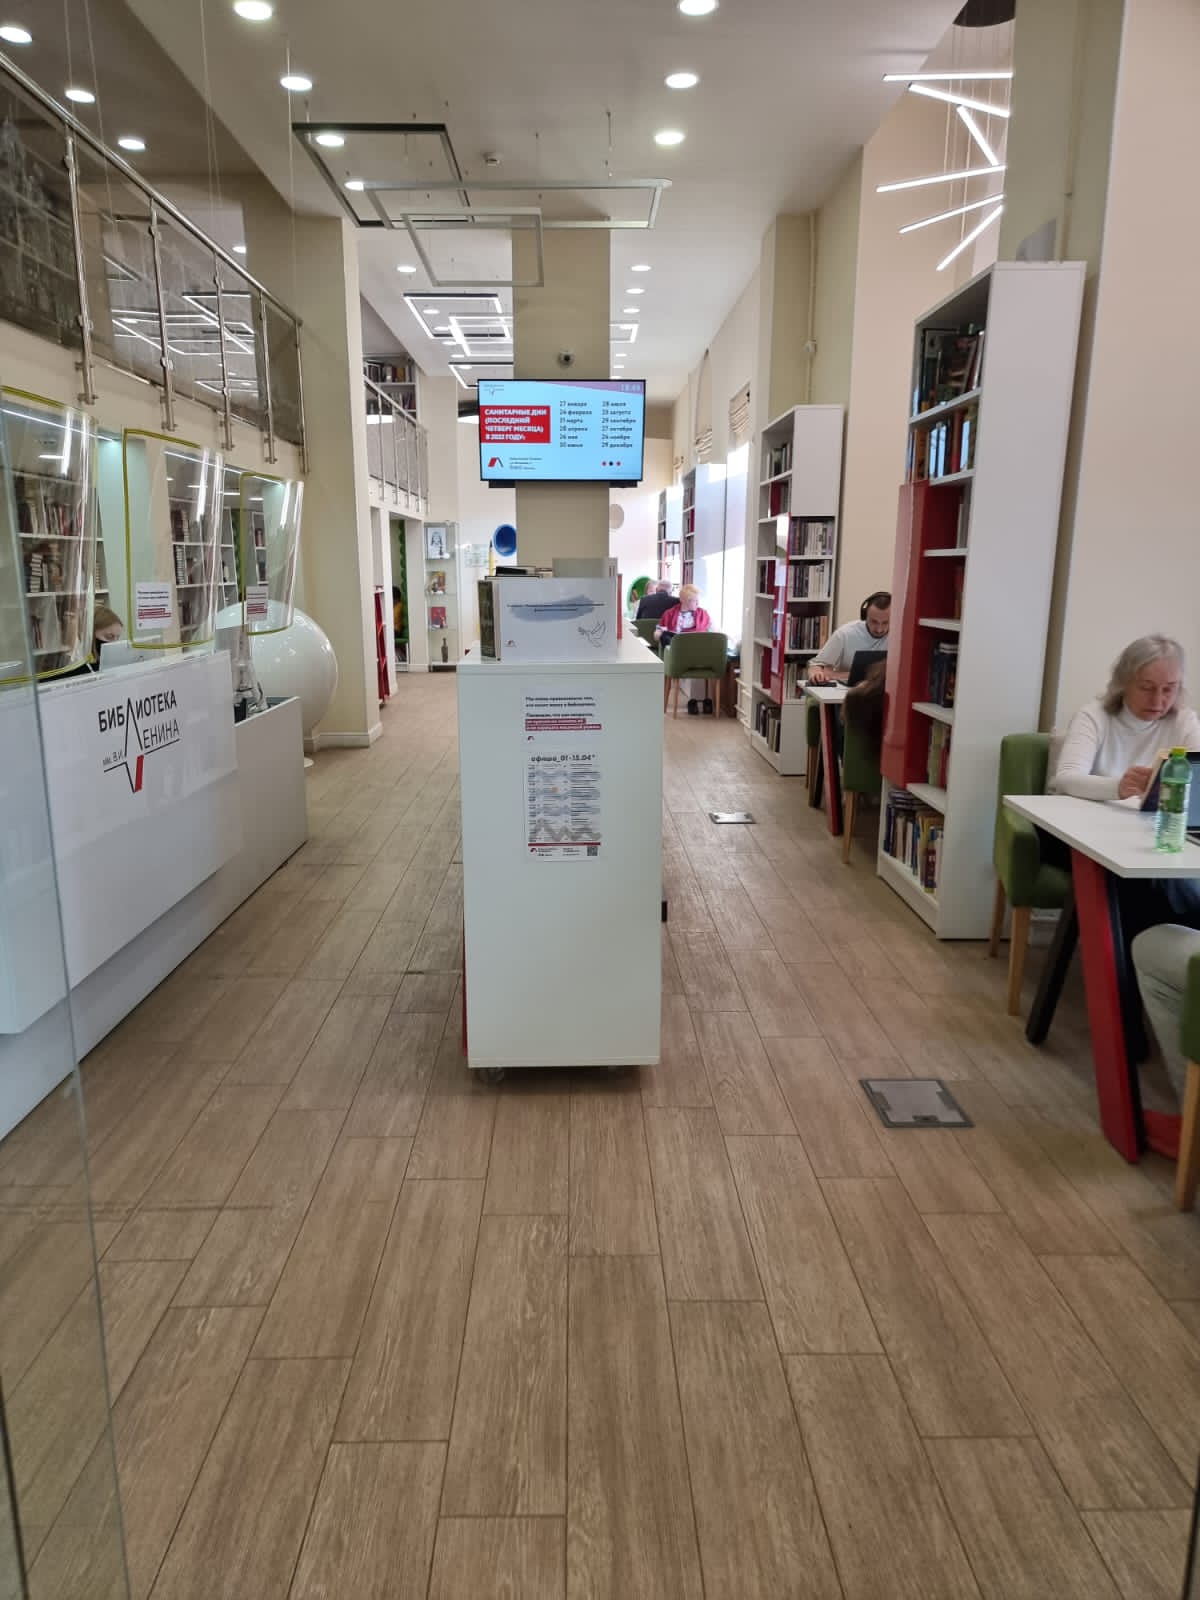 Библиотека имени В. И. Ленина - доступная среда